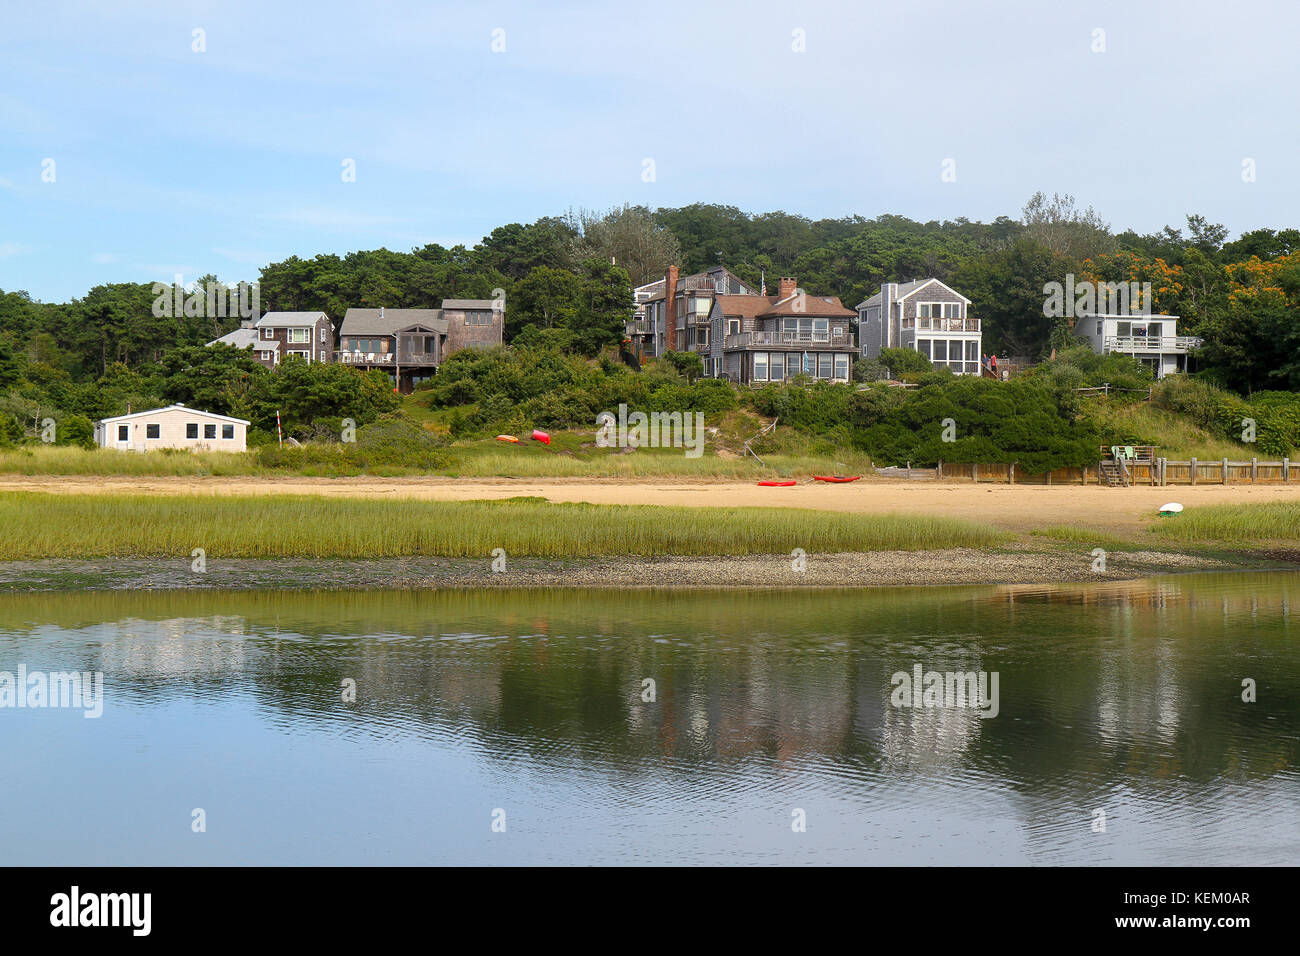 Maison avec vue sur l'eau et du paysage, Wellfleet, Cape Cod, Massachusetts, united states Banque D'Images